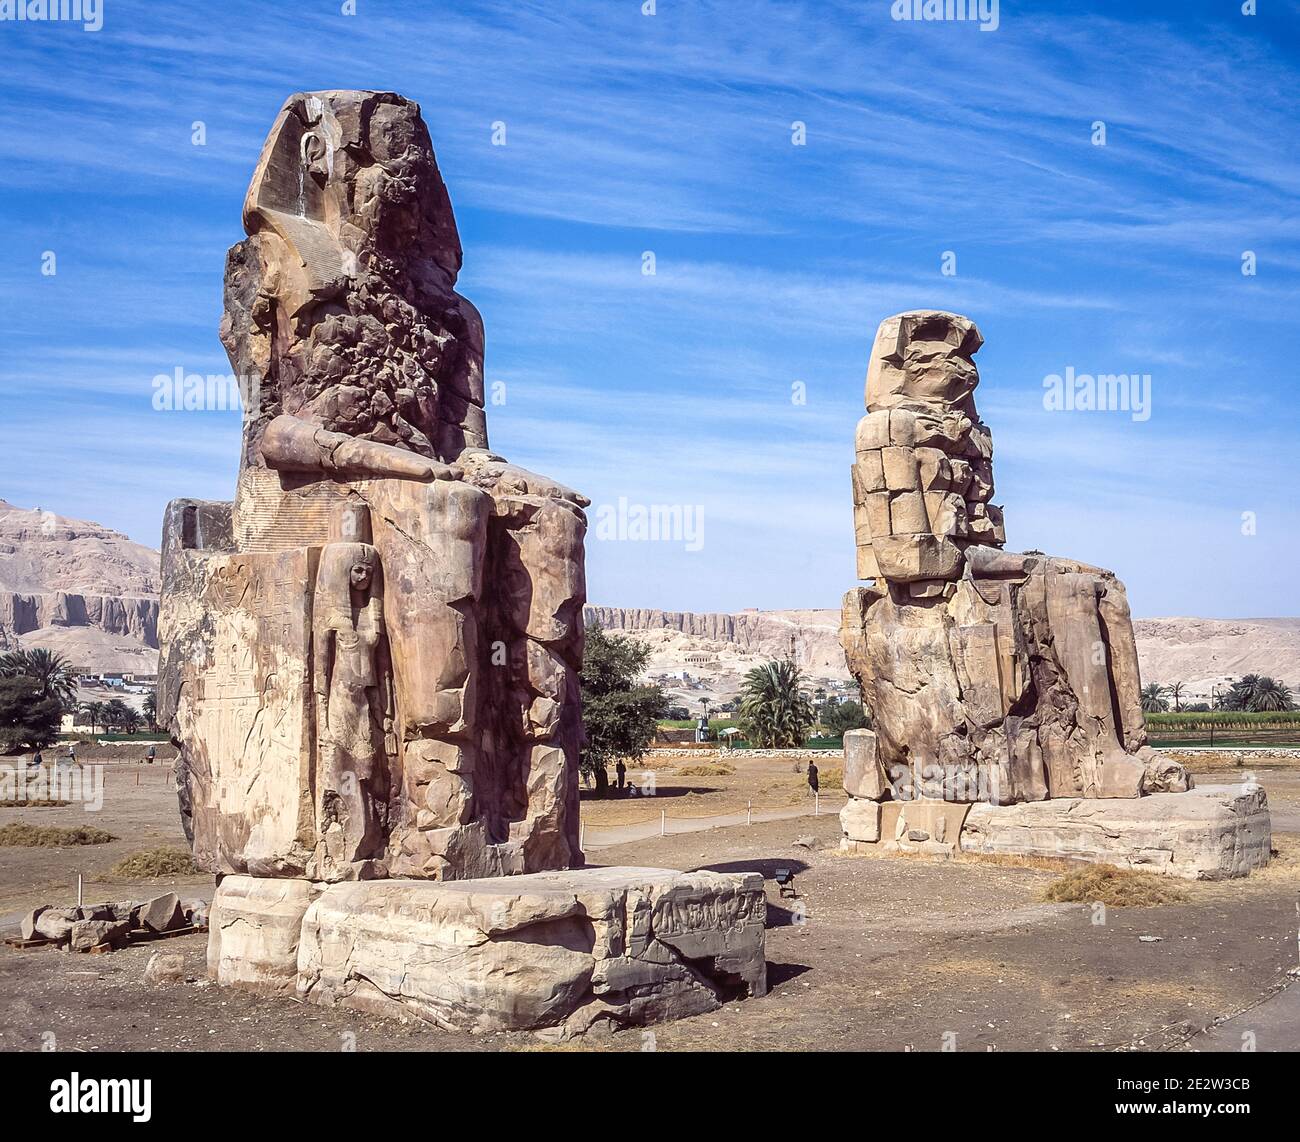 Luxor. Questo è il sito archeologico del 1350 a.C. presso i Colossi di Memnone dell'Antico Egitto, non lontano dal fiume Nilo e dalla città di Luxor precedentemente conosciuta come Tebe. Le statue sono del faraone Amenhotep III, ci sono due statue più piccole ai suoi piedi, una è sua madre, l'altra sua moglie. Inizialmente costruiti per proteggere l'ingresso al tempio di Amenotep contro il male, sono stati anche visti per proteggere la riva occidentale del Nilo. I Colossi hanno sofferto di gravi danni sismici, ma dopo 3500 anni rimangono in piedi. Foto Stock